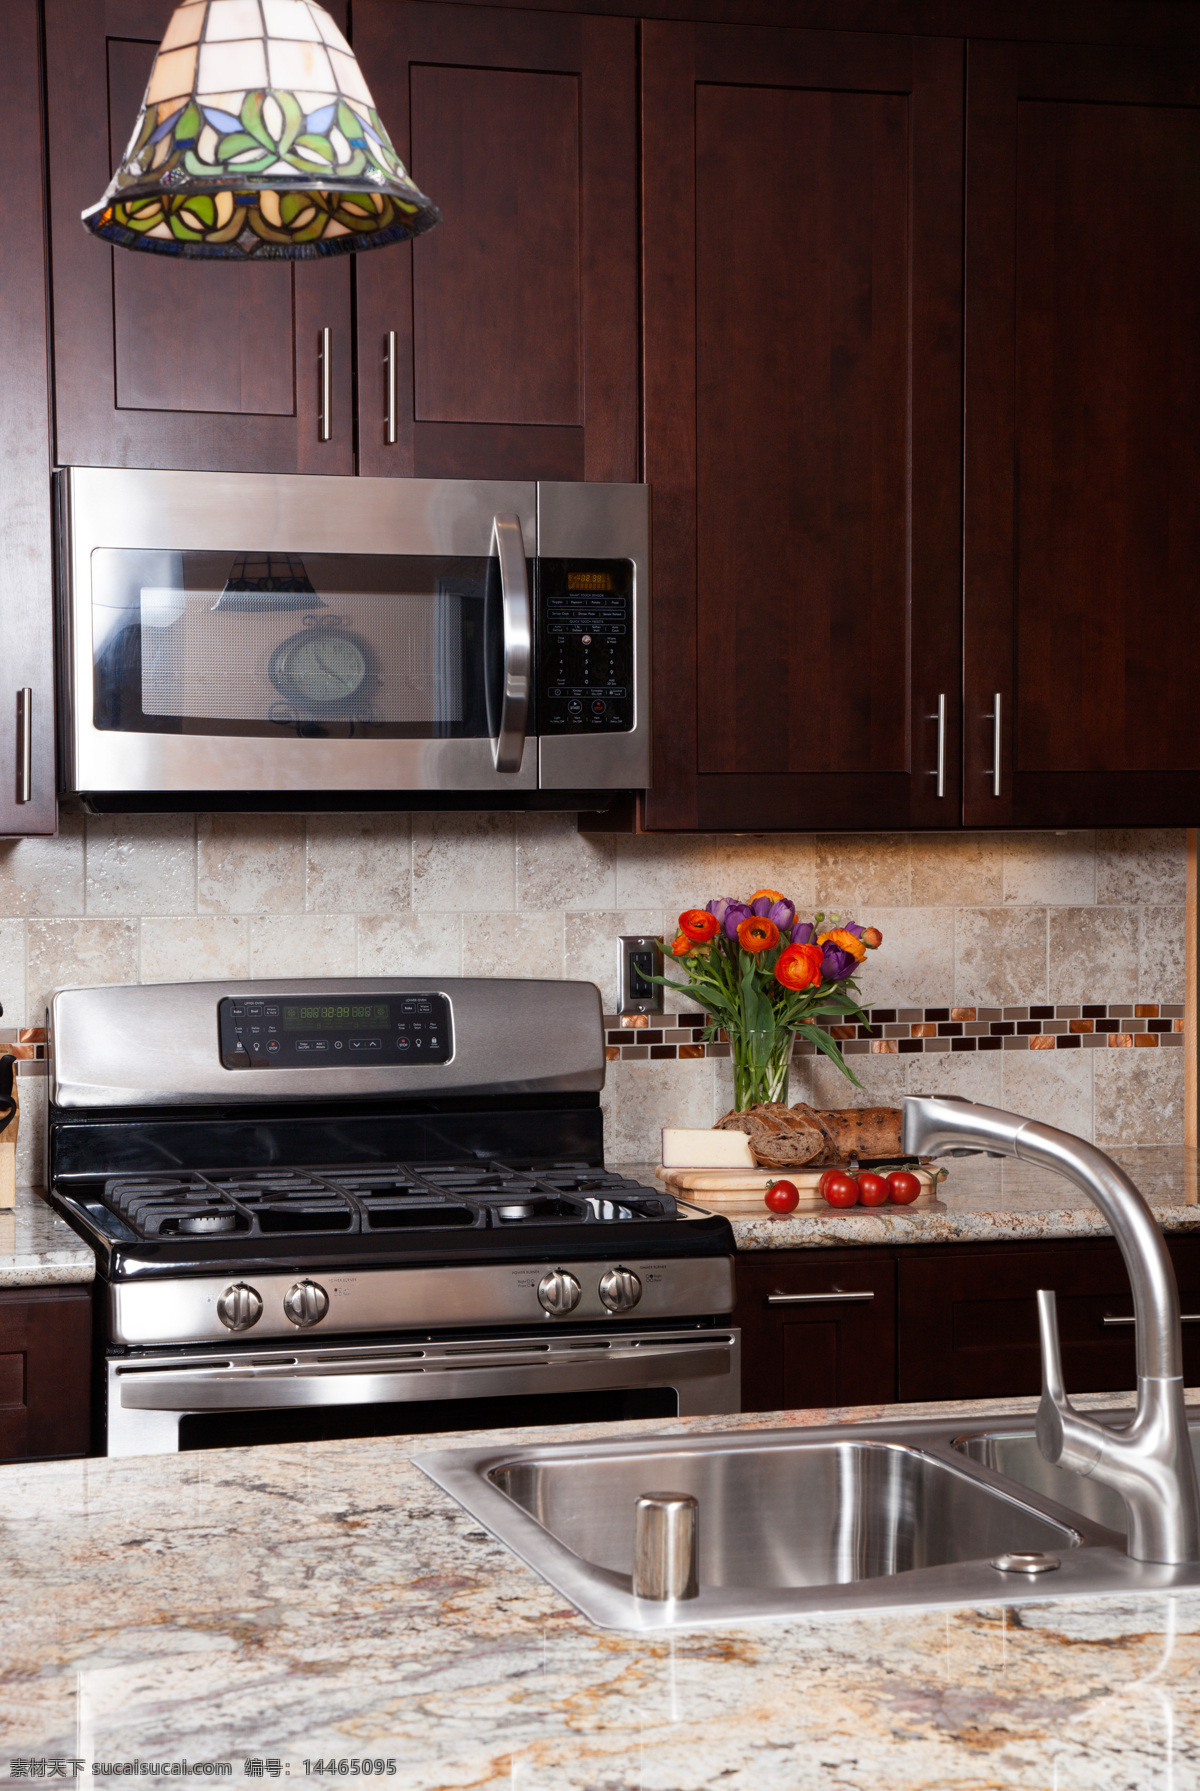 现代化 厨房 微波炉 水槽 灶具 室内设计 厨房设计 装修 装潢 橱柜 环境家居